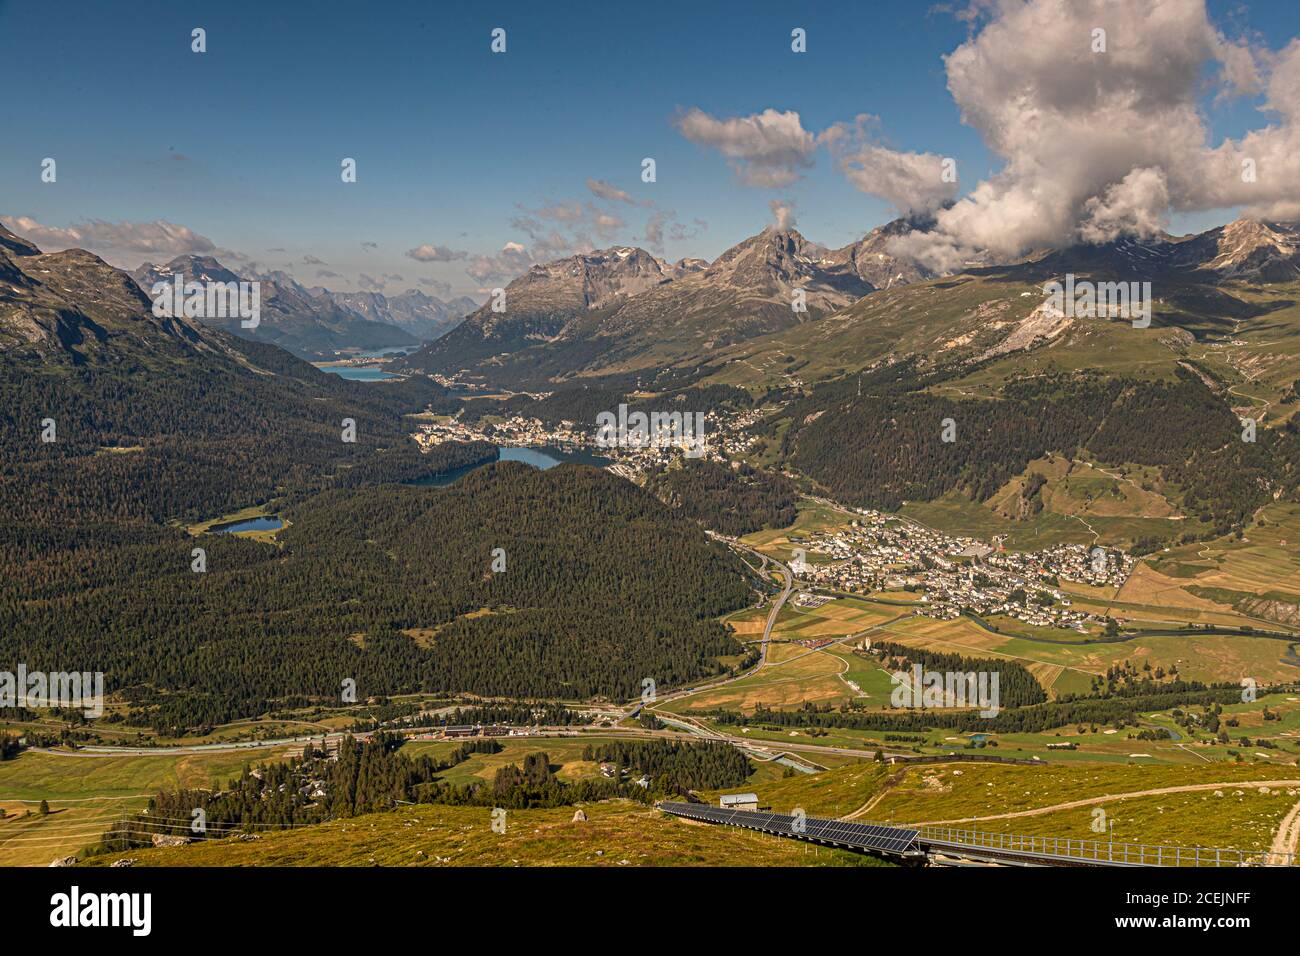 Vue de la gare de Muottas Muragl: Dans la vallée à gauche se trouve Pontresina, où la chancelière allemande Angela Merkel récupère régulièrement. Dans la vallée à droite, le long des lacs, se trouvent les villes de Celerina, Saint-Moritz et, en arrière-plan, Silvaplana Banque D'Images